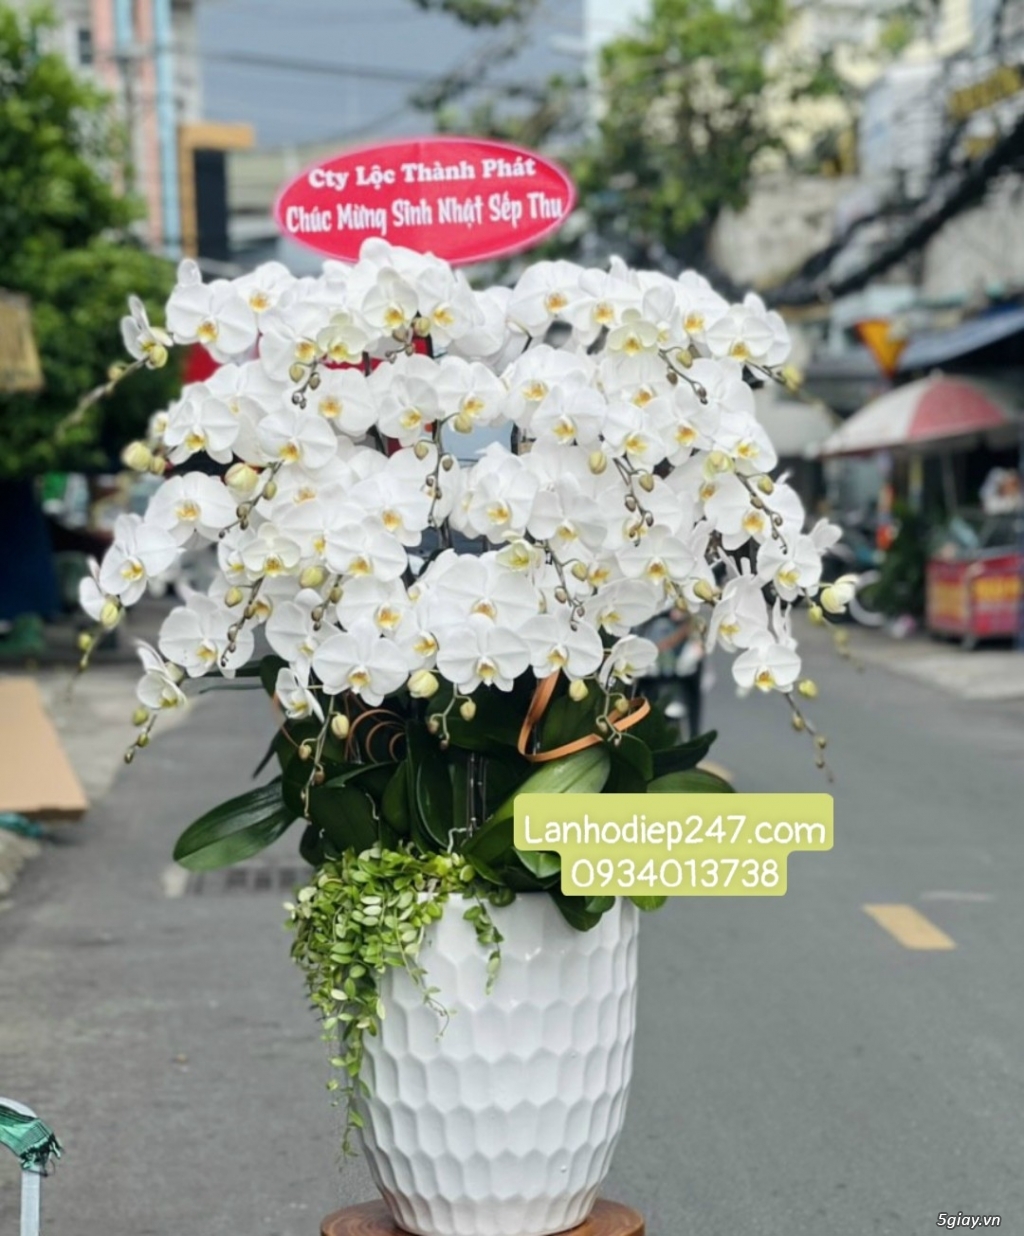 Đặt mua những chậu lan đẹp nhất Sài Gòn tại Lan Hồ Điệp 247 TPHCM - 10